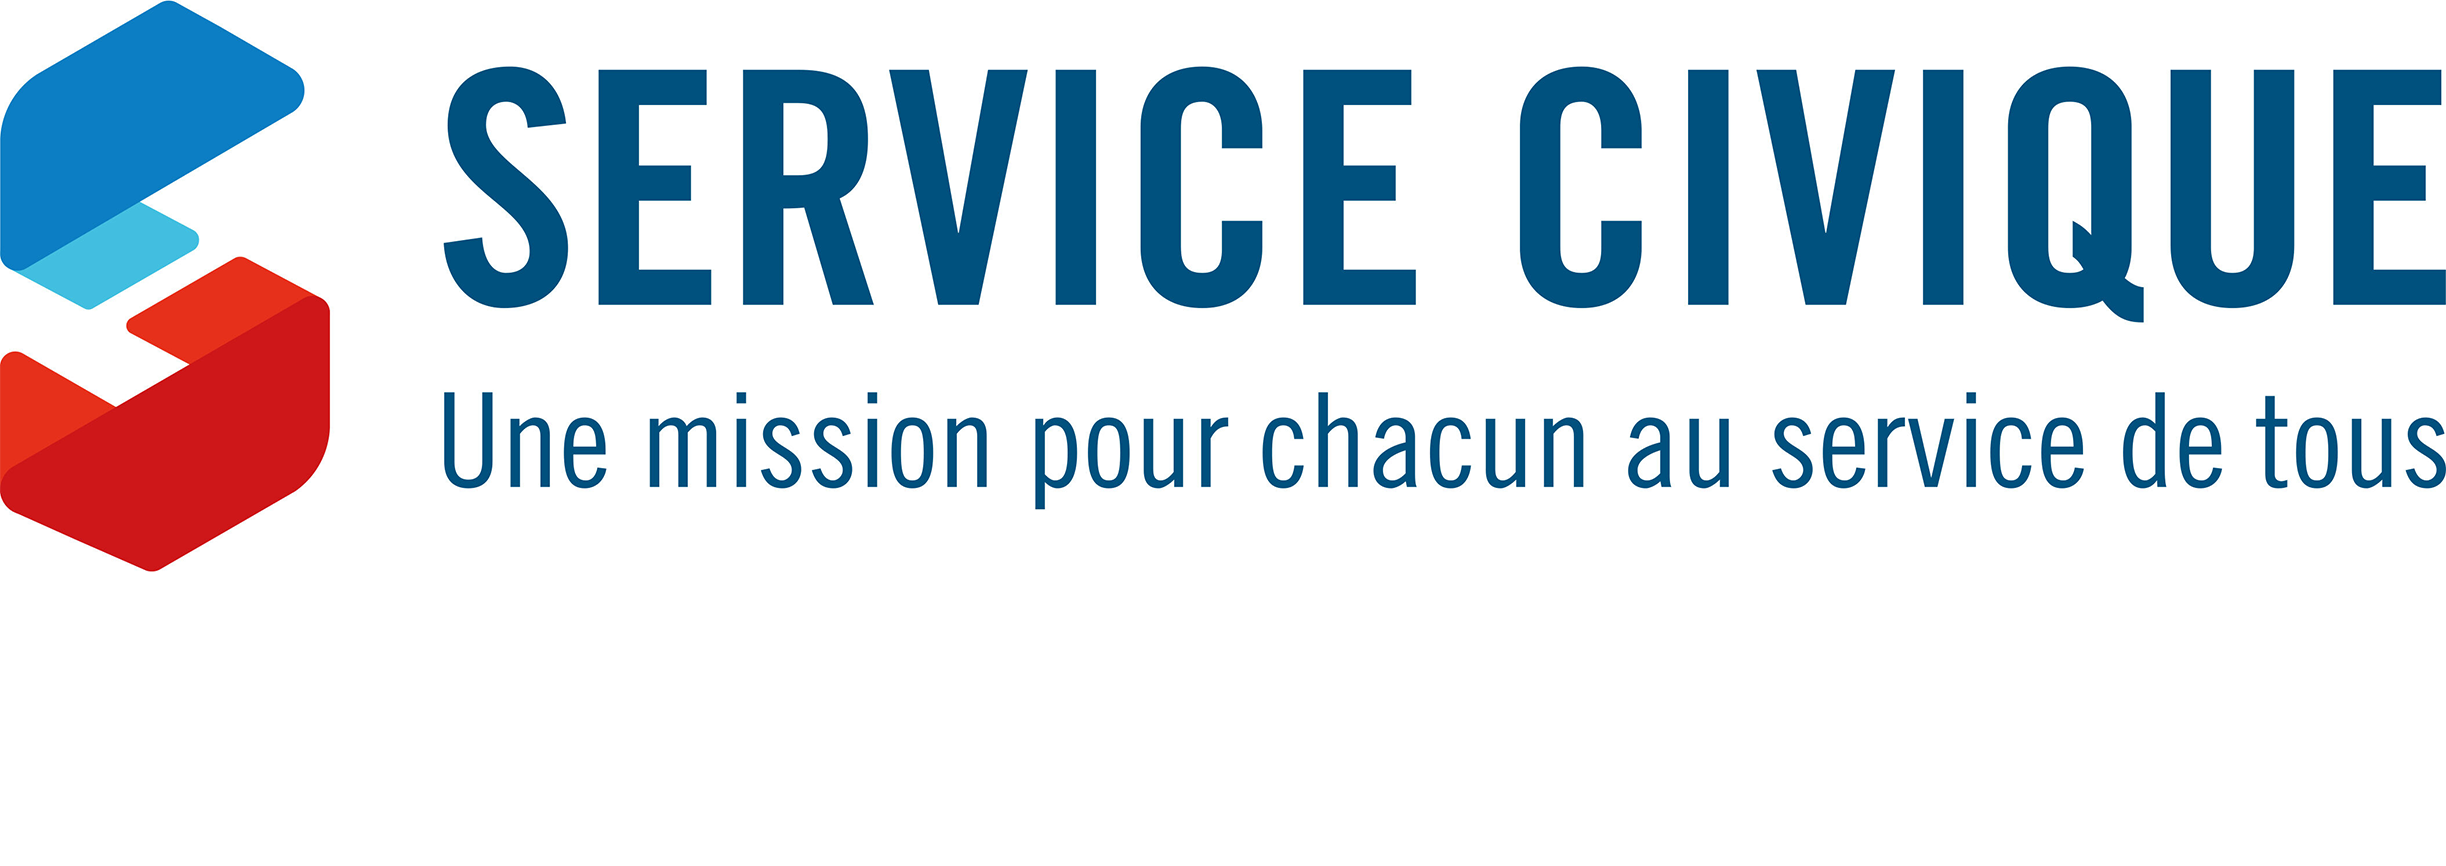 service-civique-logo-rectangulaire.png